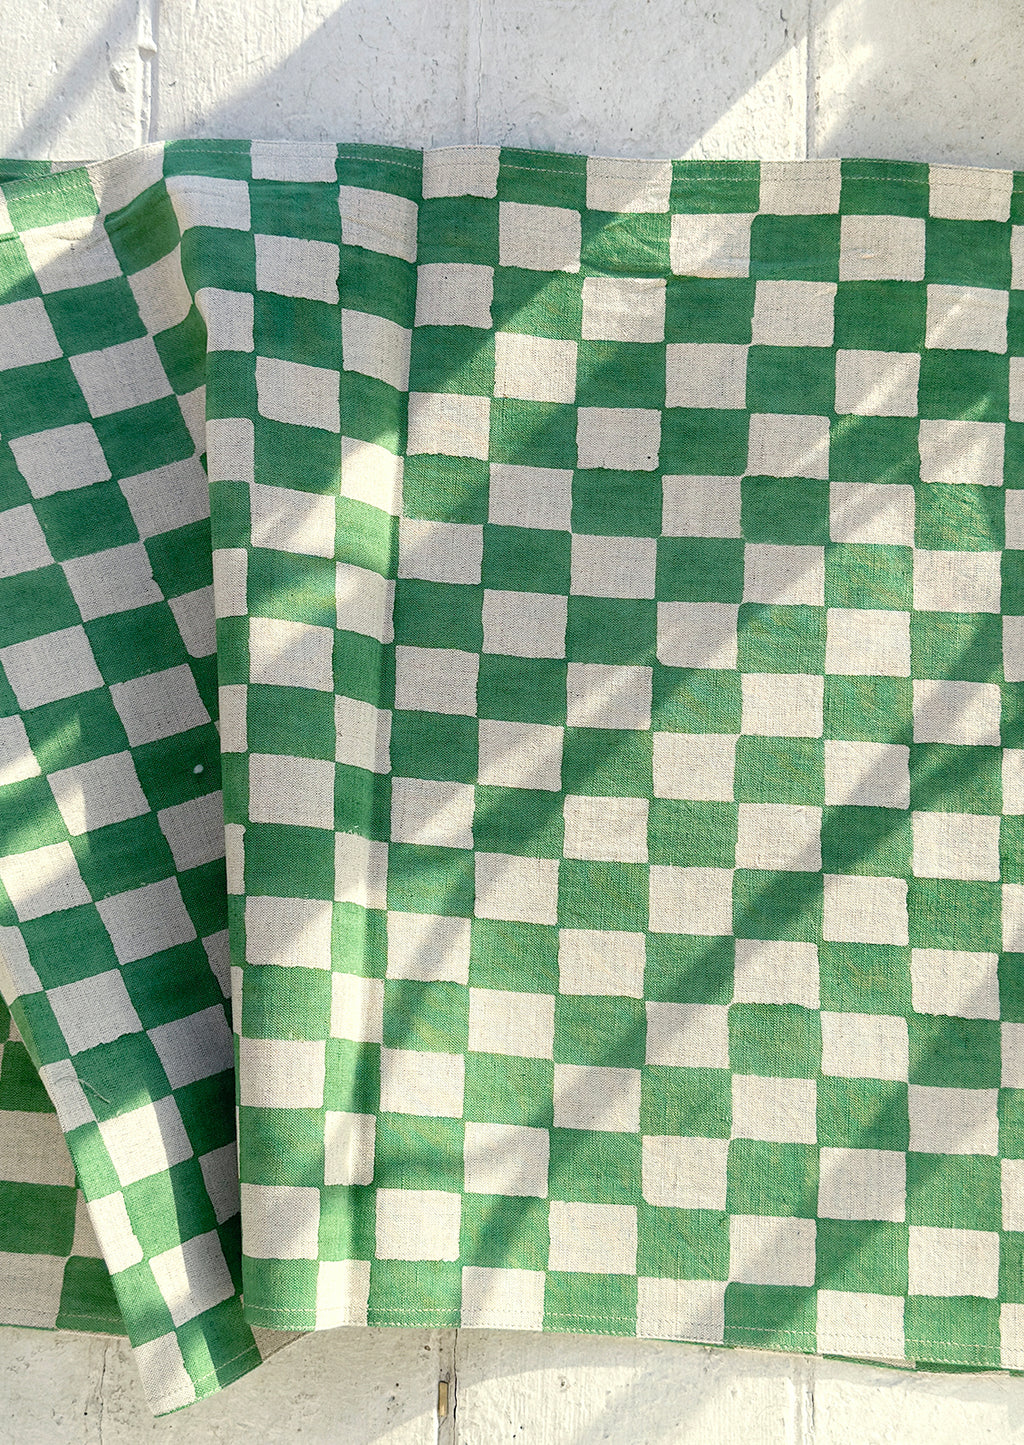 Clover: A linen table runner in clover green checker print.